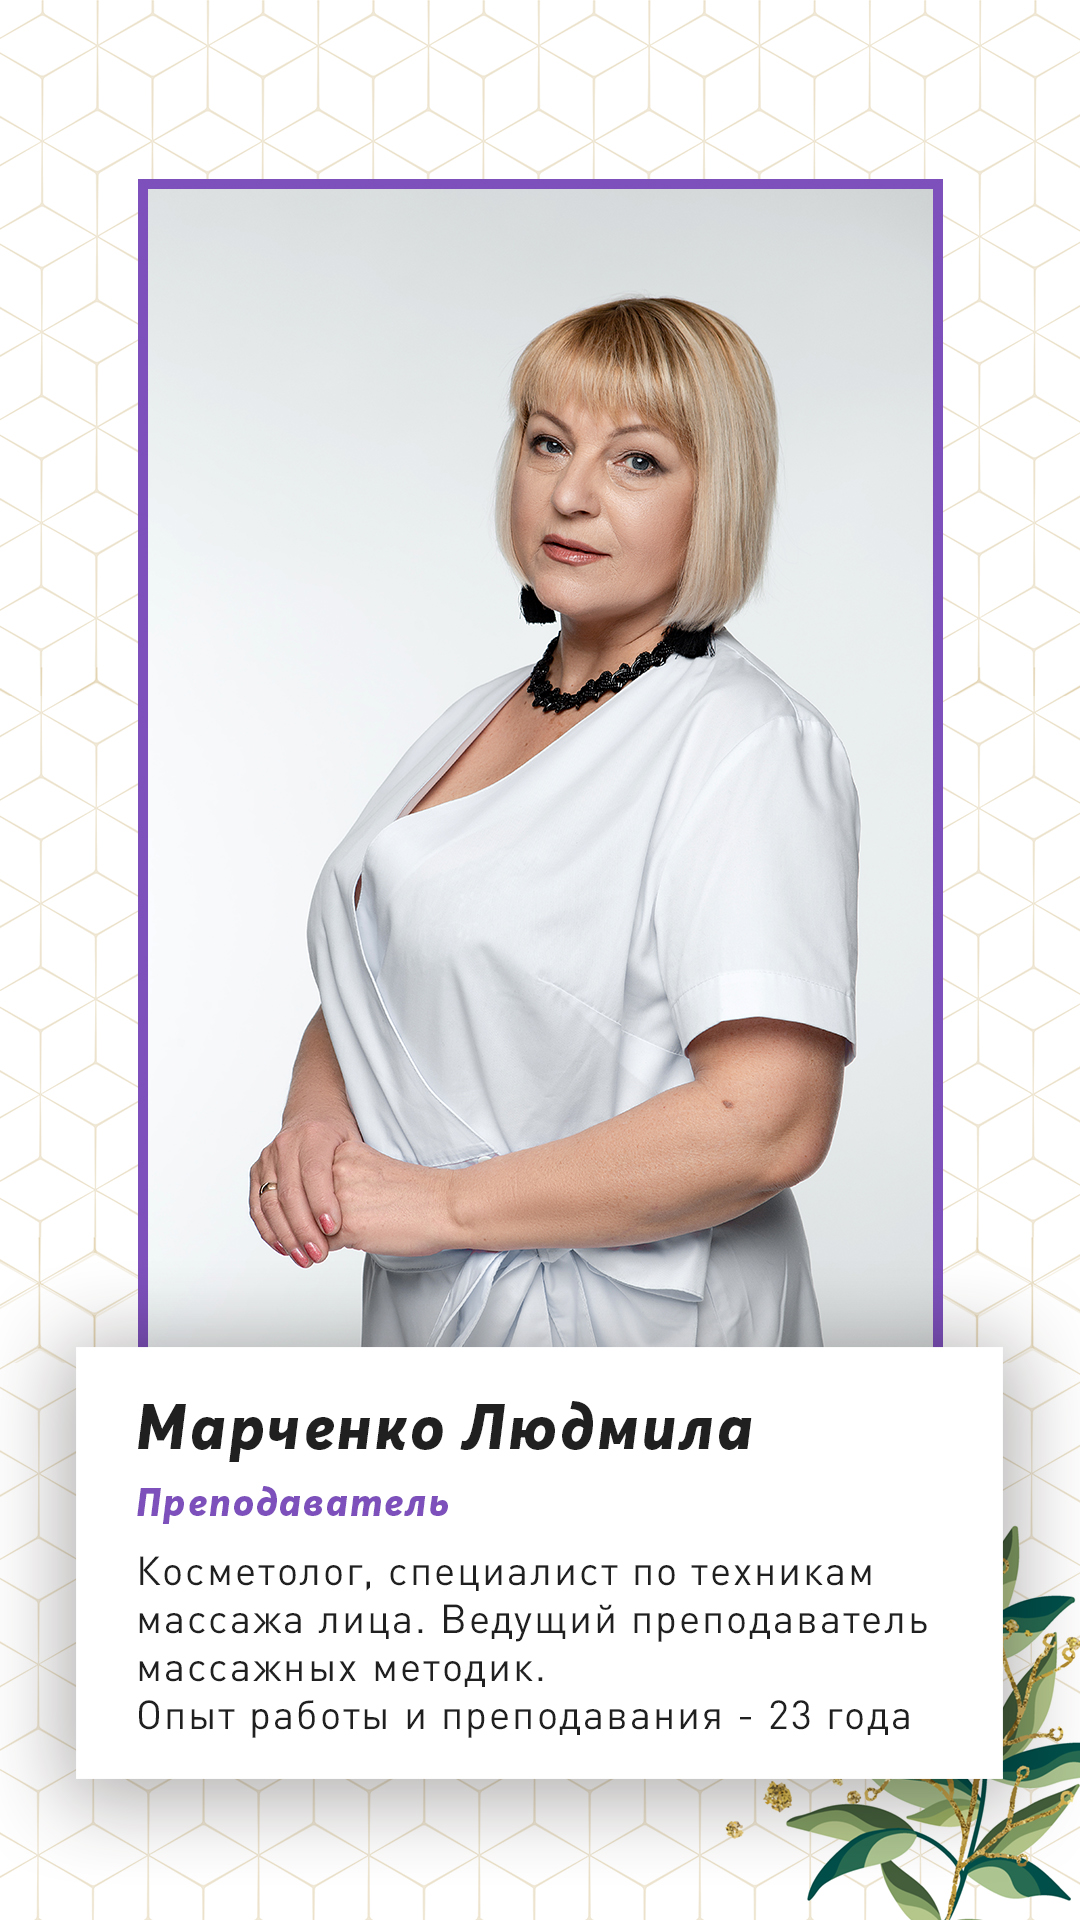 Преподаватель массажных техник Марченко Людмила